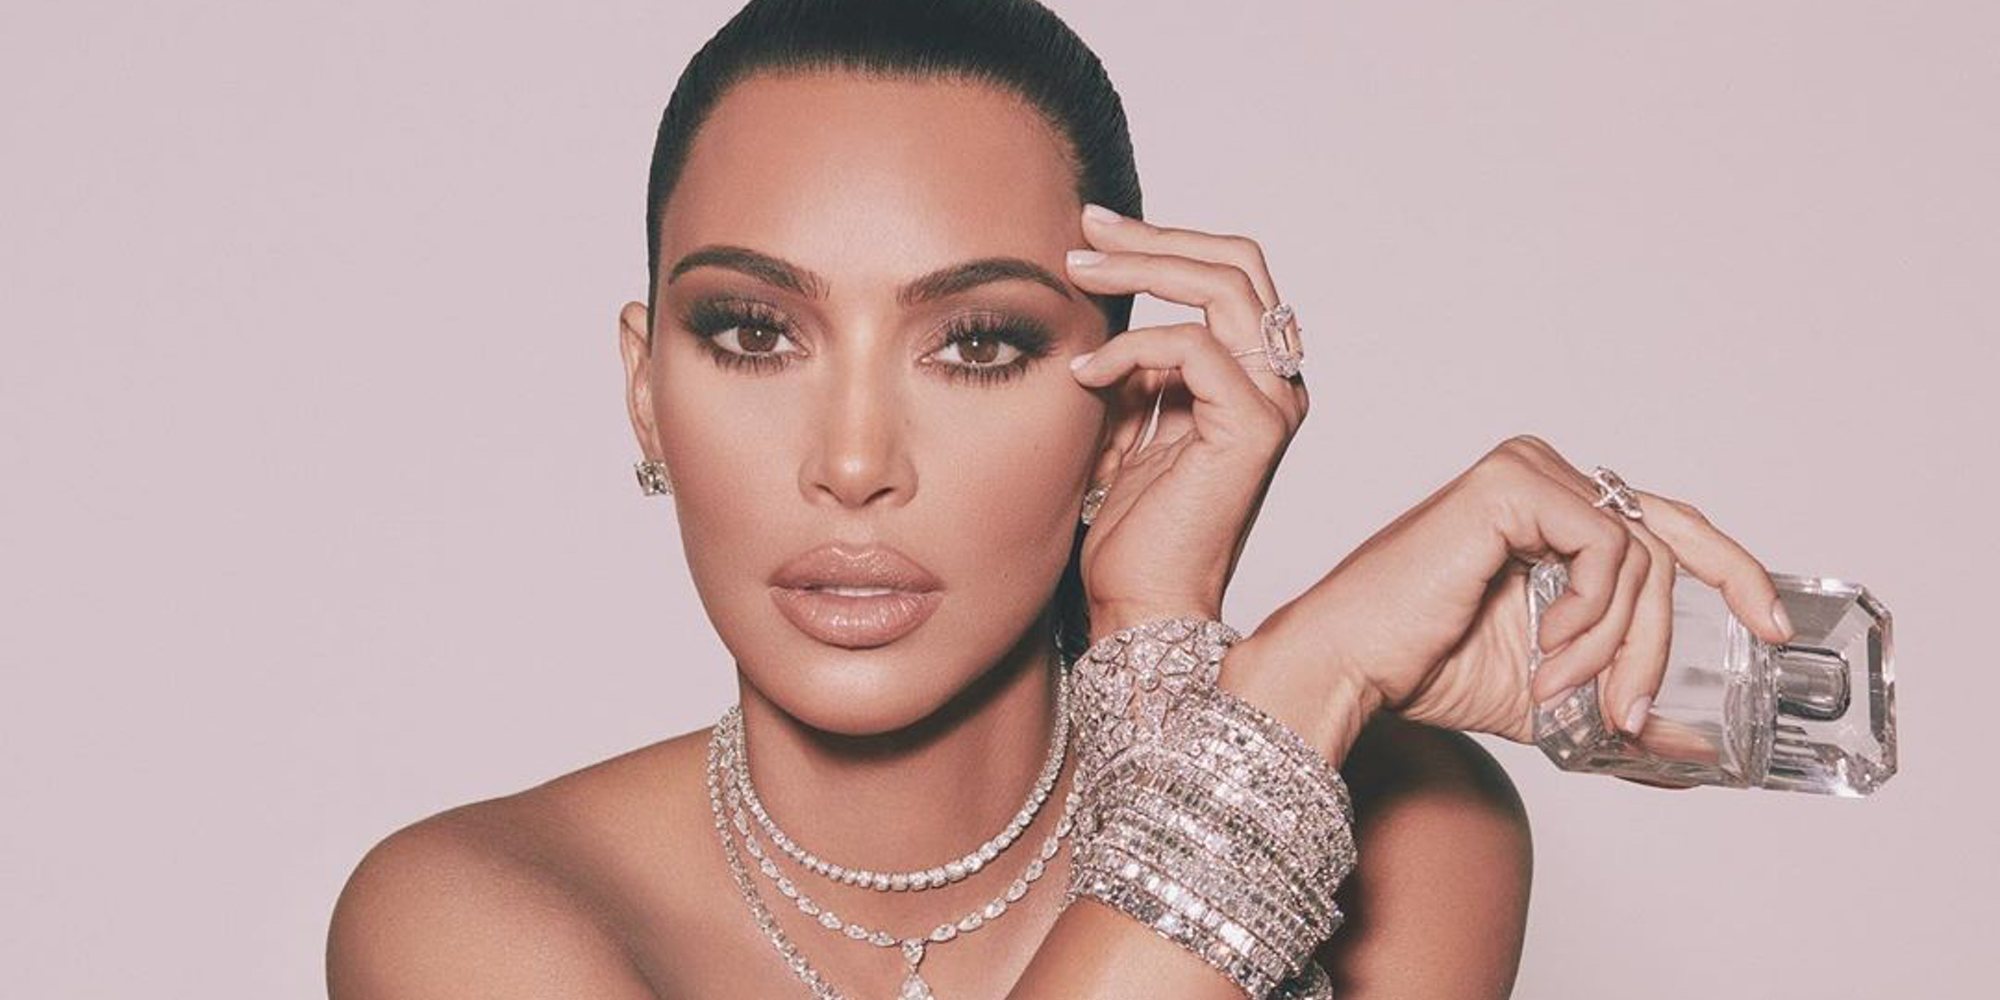 El ladrón y autor de 'Yo secuestré a Kim Kardashian', sobre el robo de París: "Elegimos el diamante, no a ella"